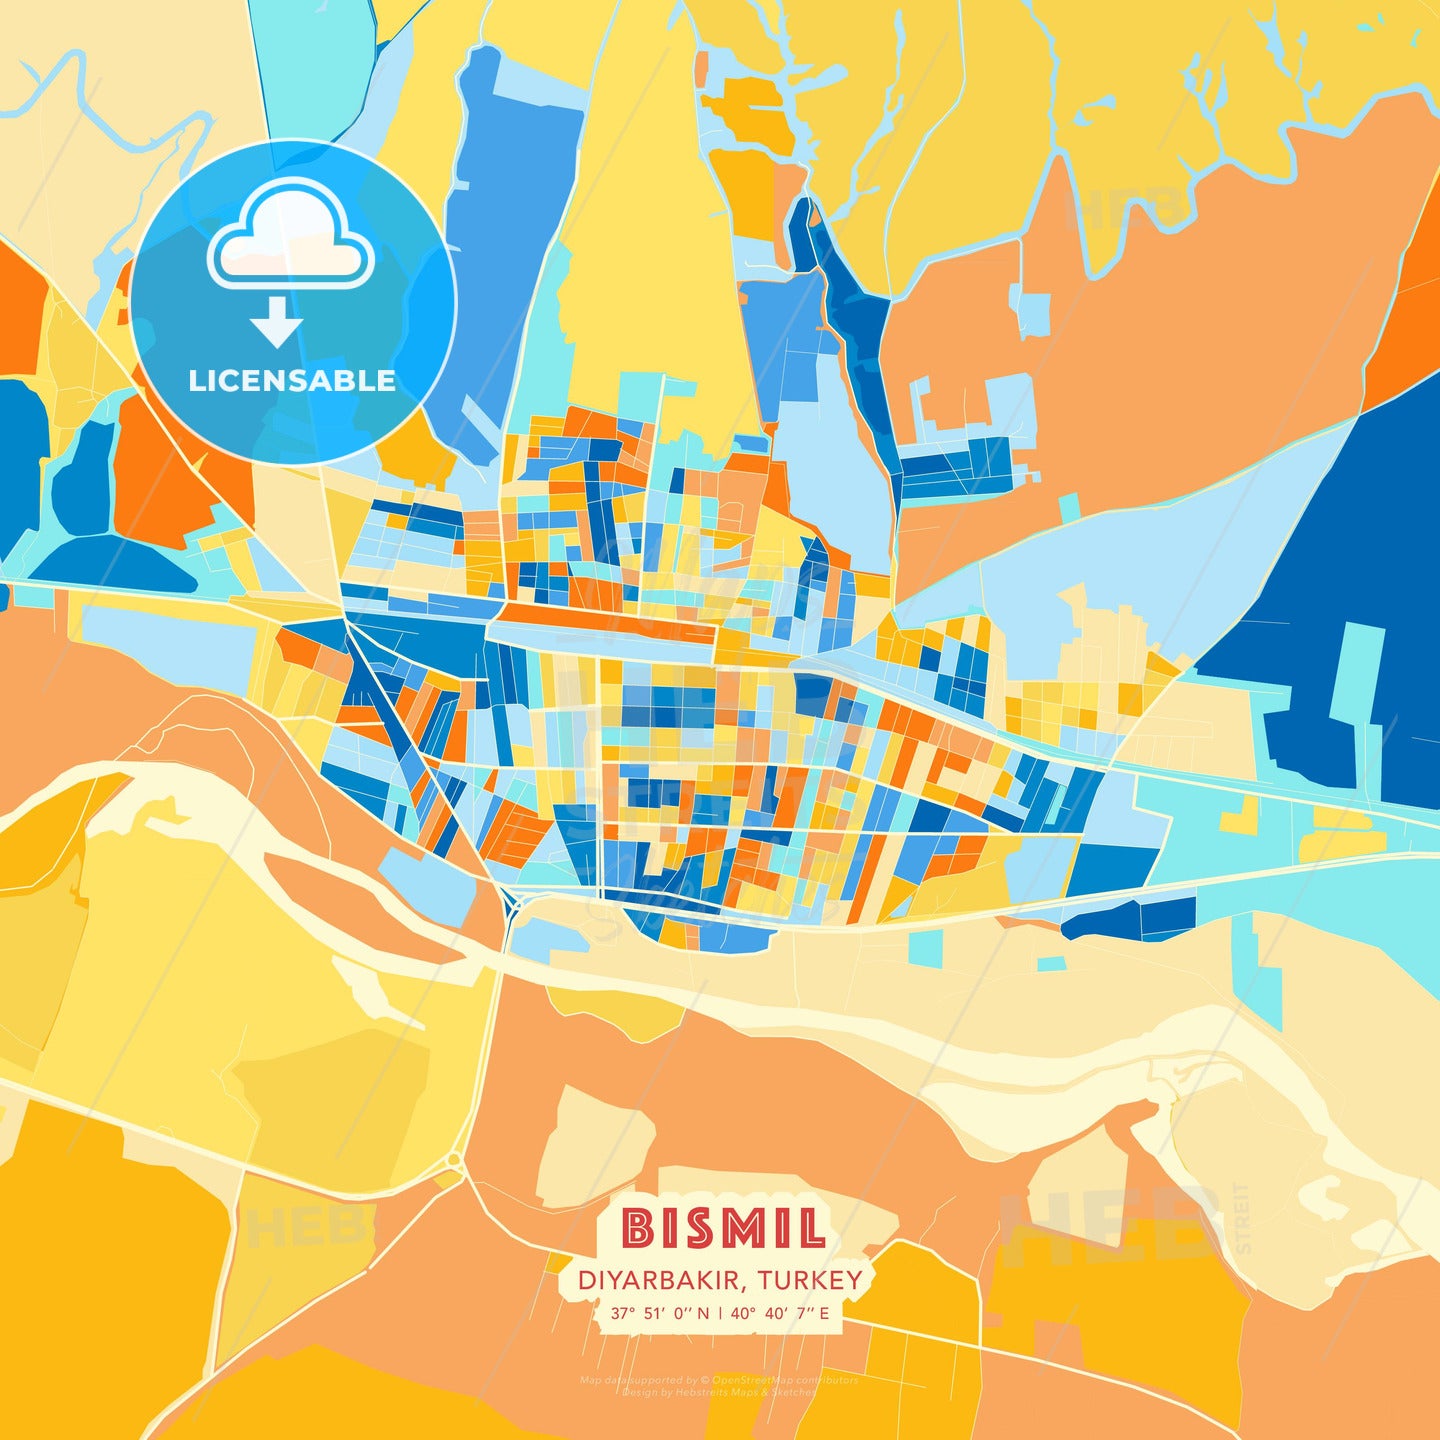 Bismil, Diyarbakır, Turkey, map - HEBSTREITS Sketches